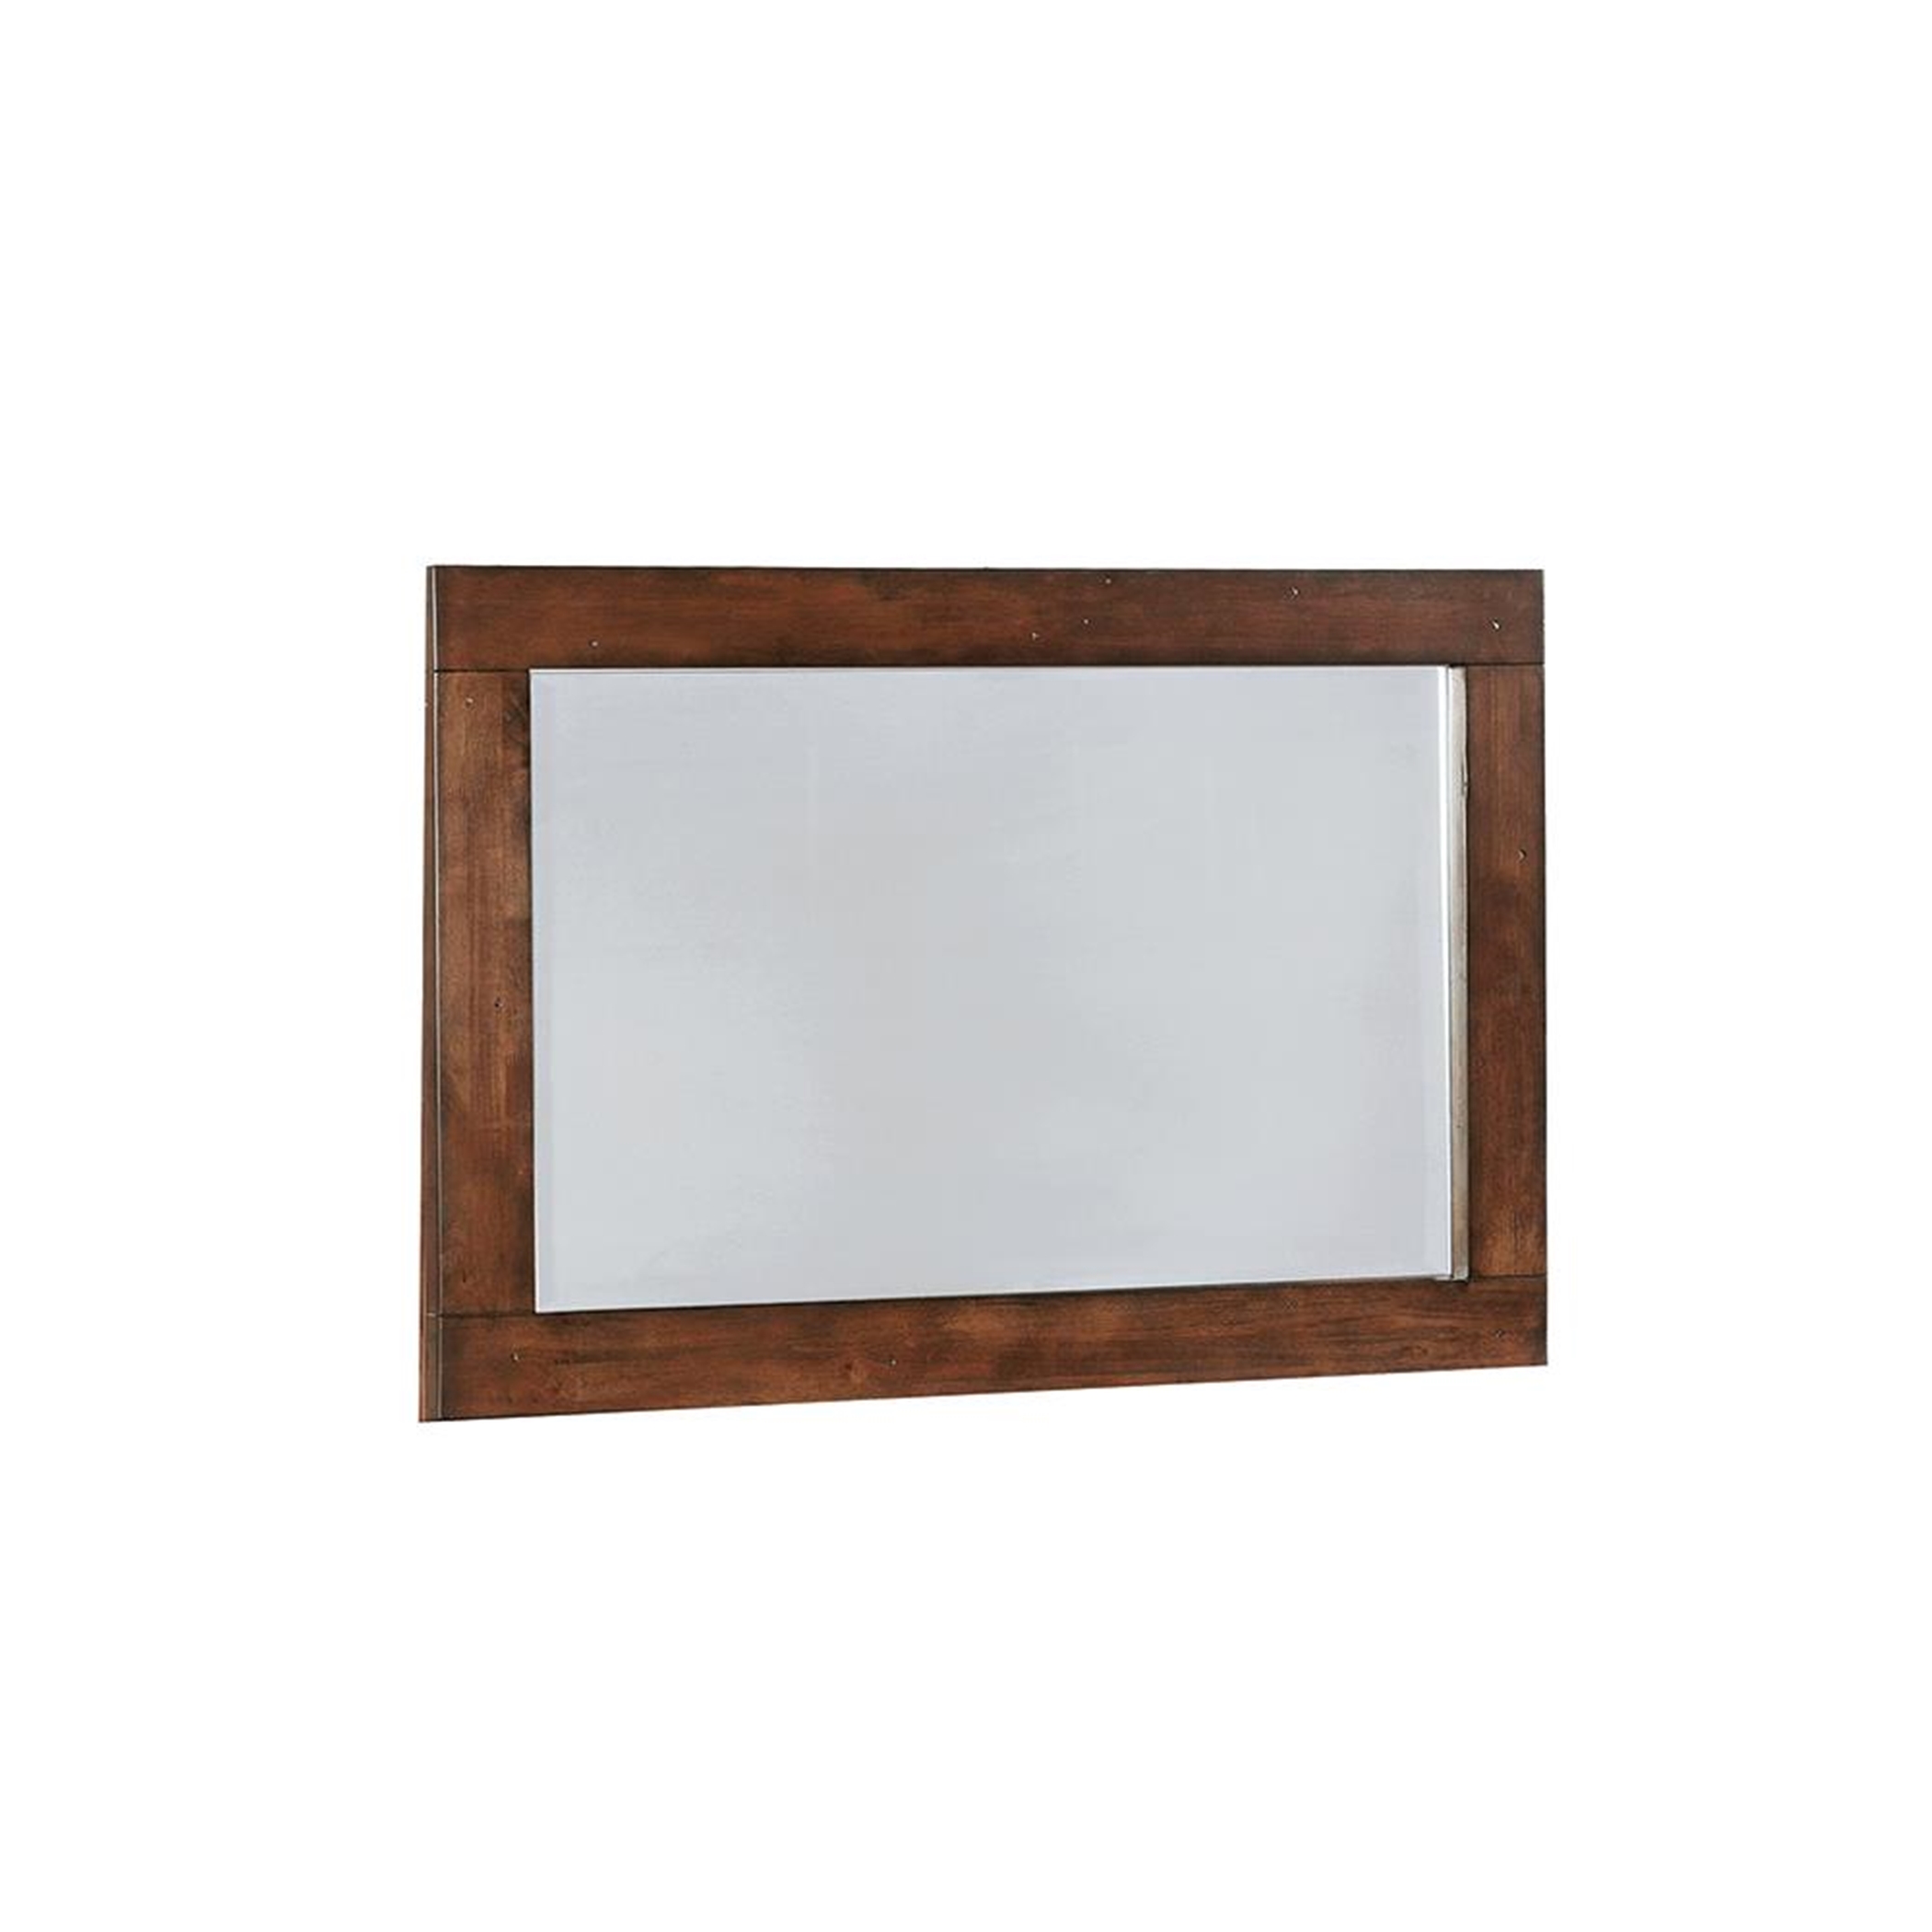 Artesia Dark Cocoa Rectangular Dresser Mirror